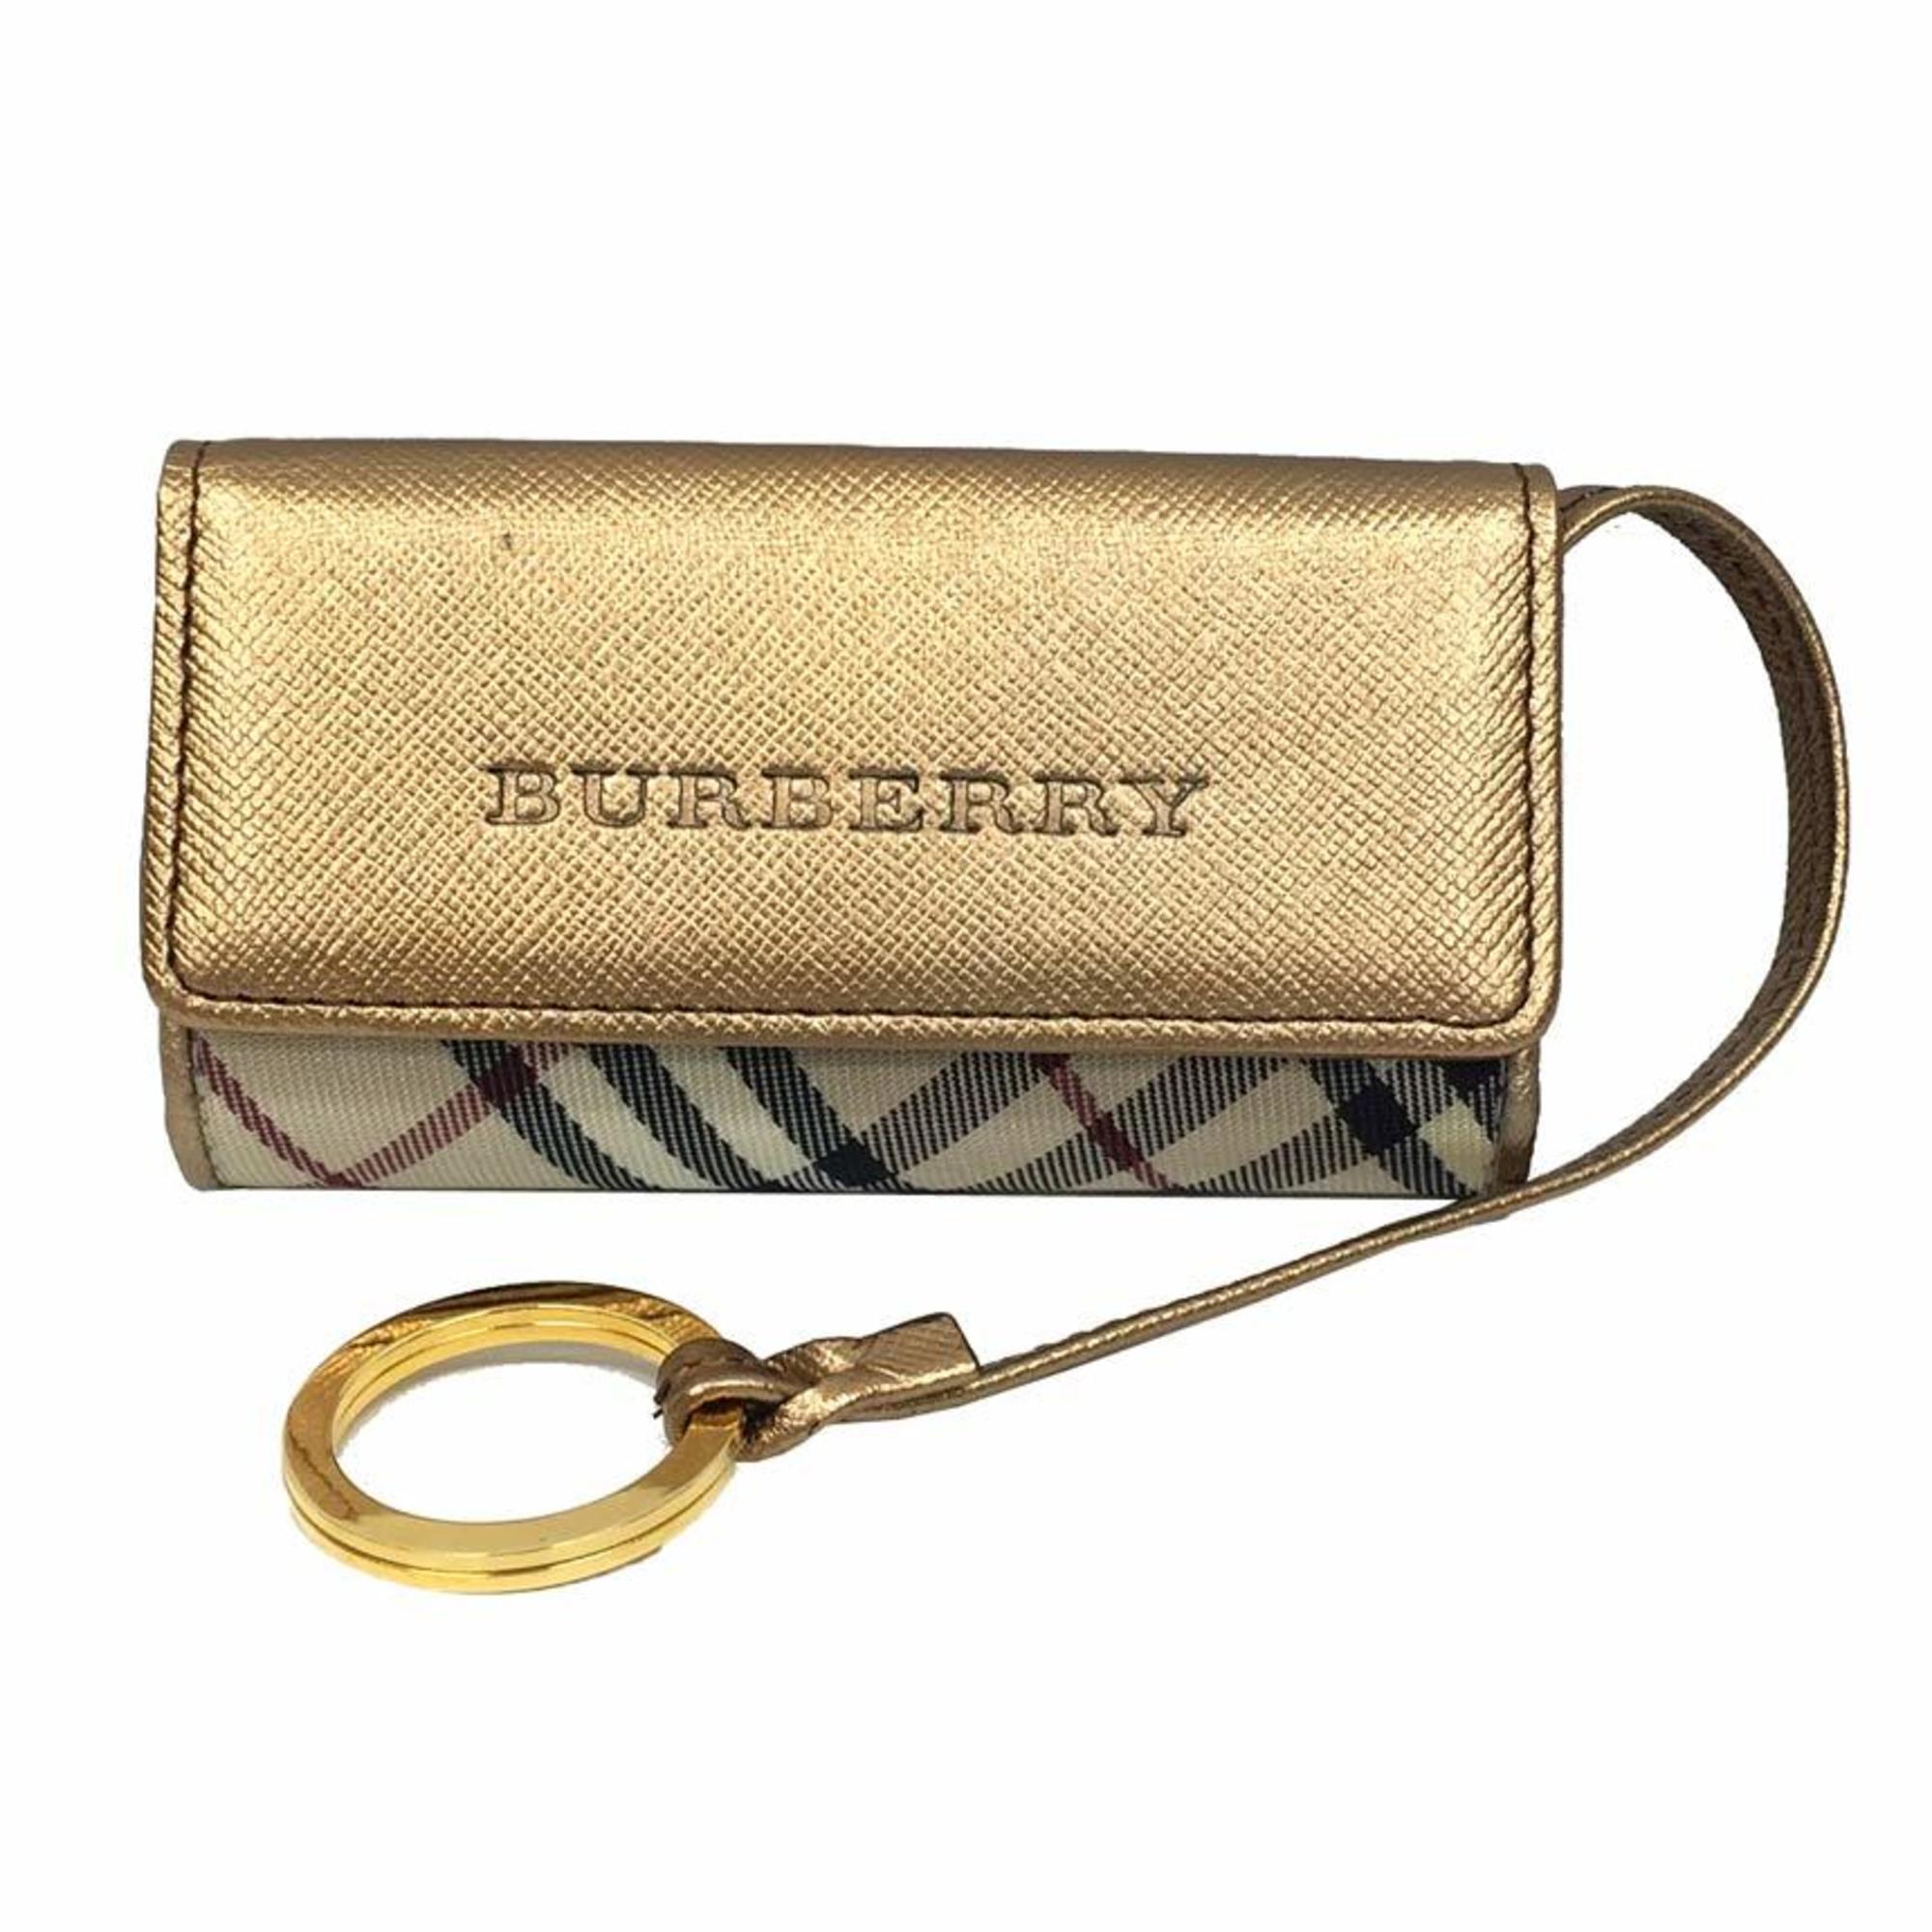 Burberry key case 4824-69 gold (beige plaid) wallet ladies